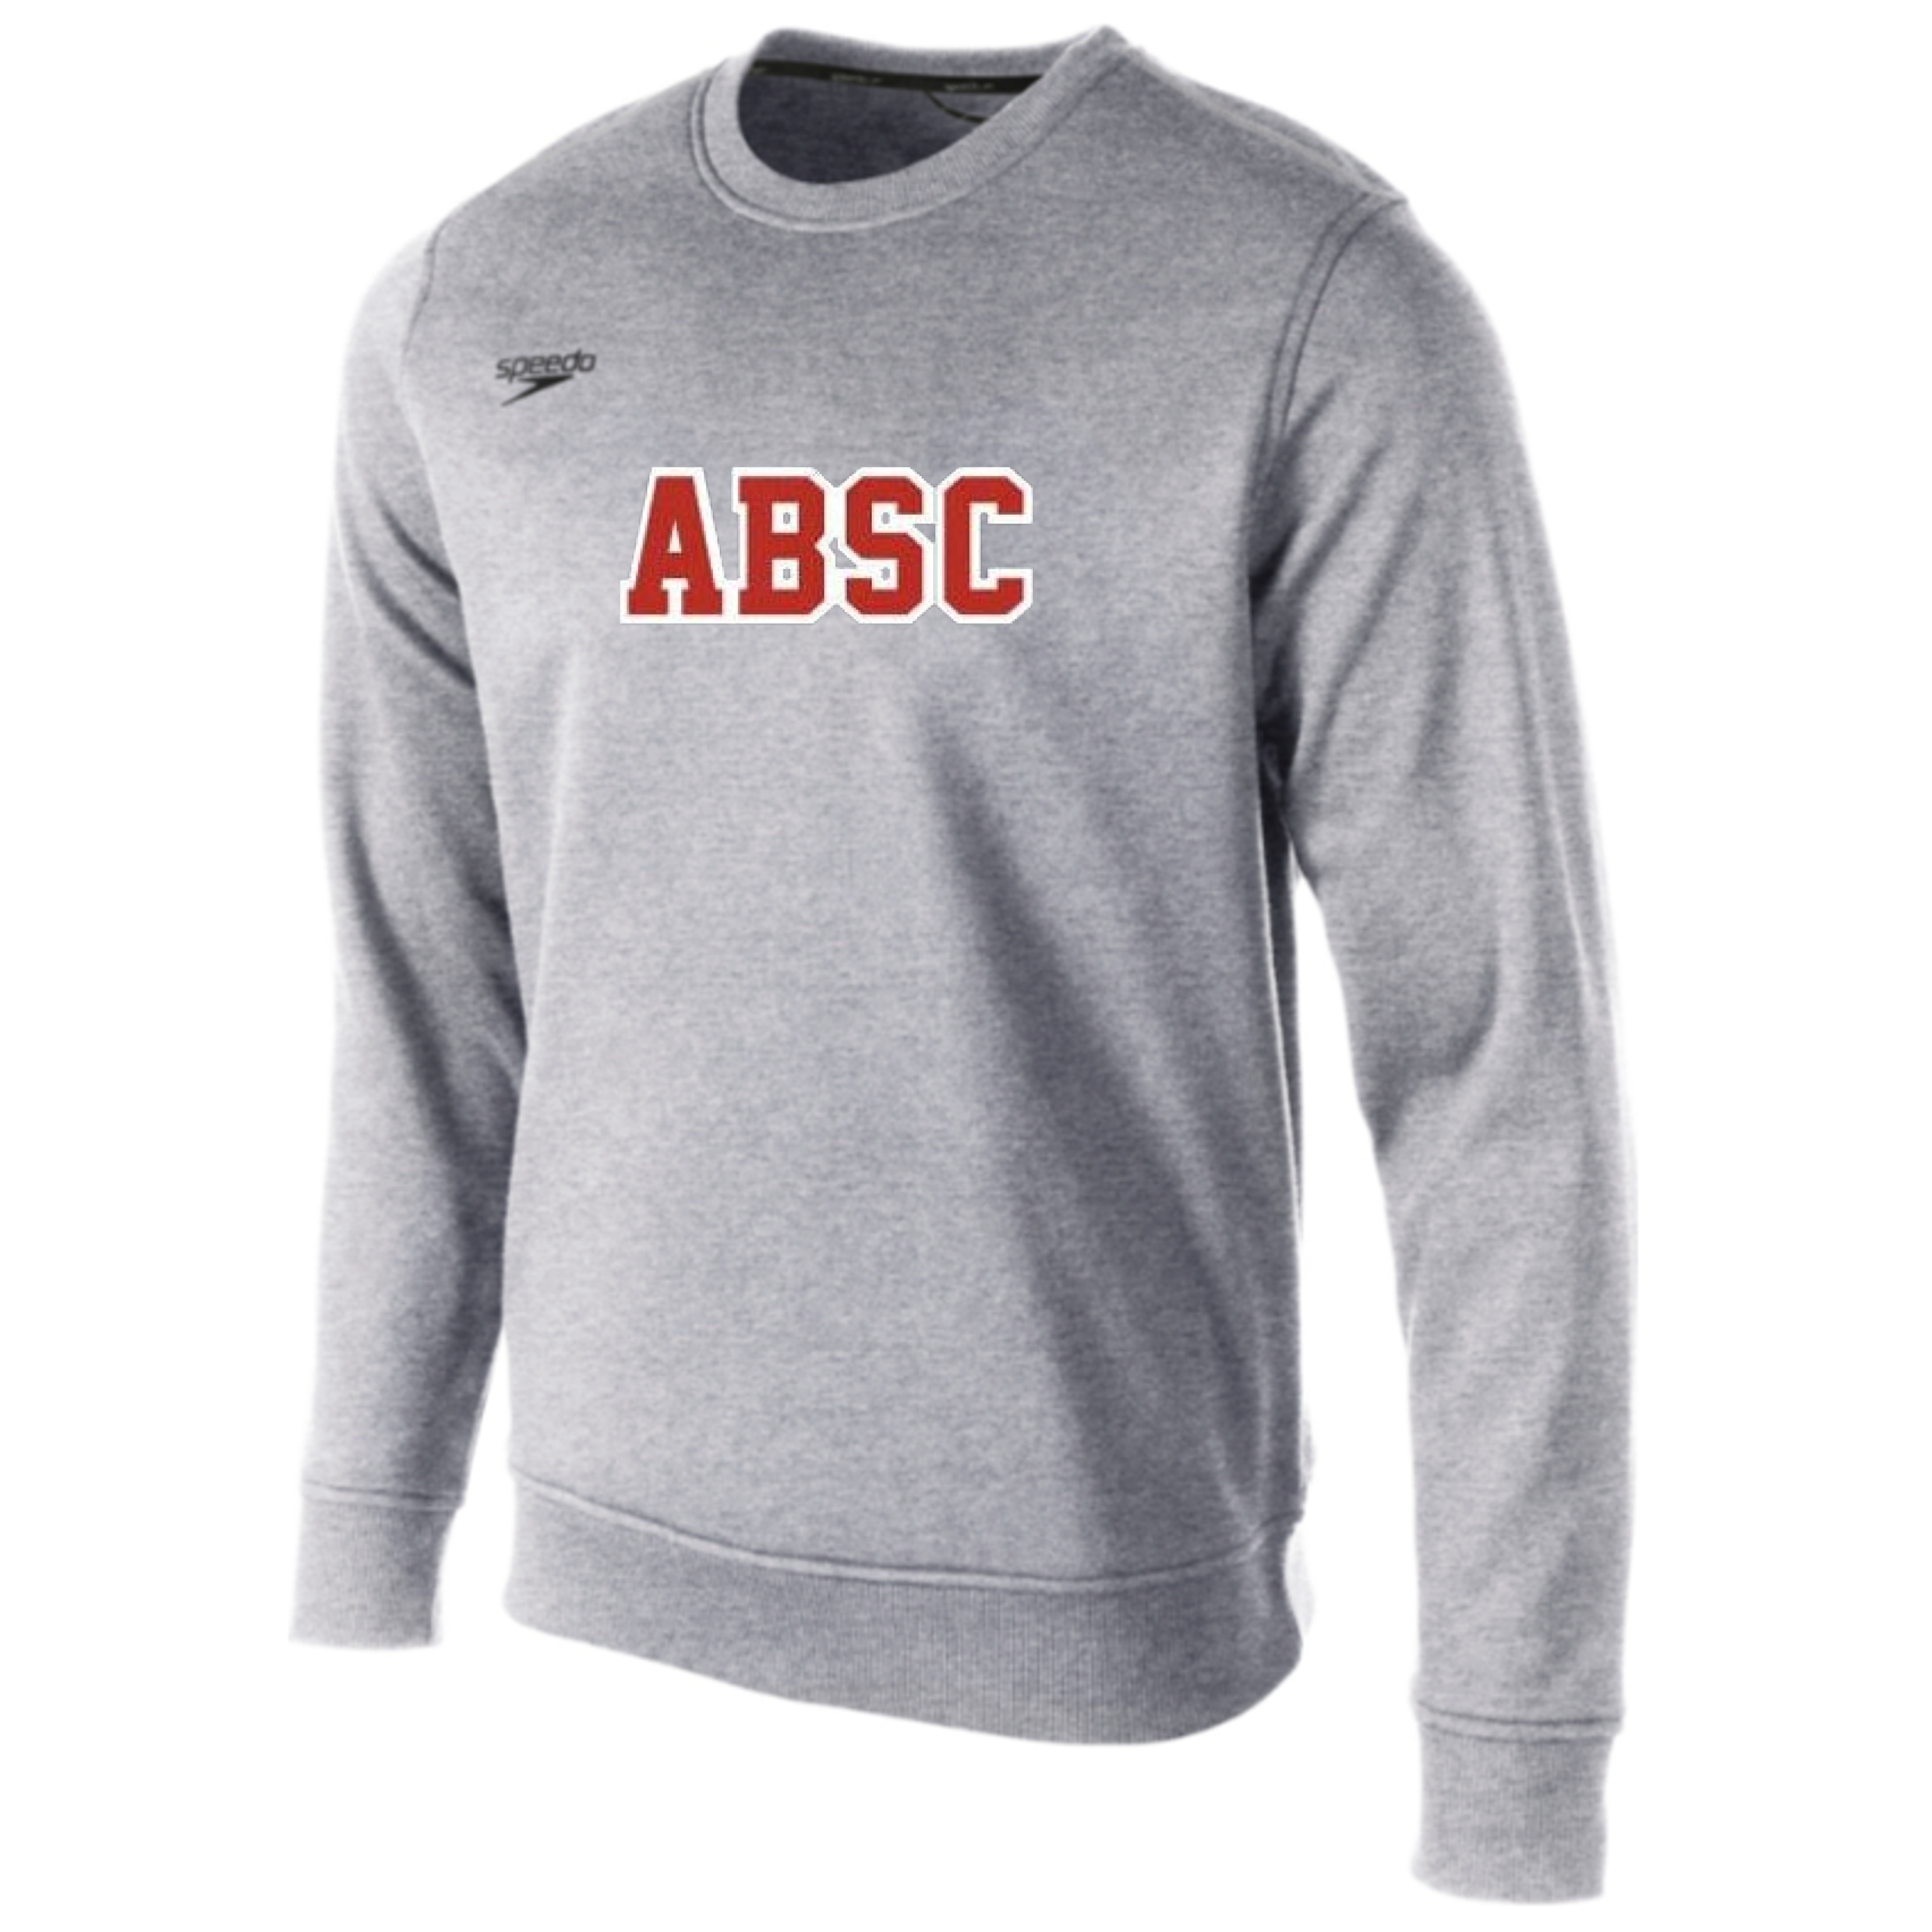 Speedo Fleece Crew Neck Sweatshirt (Customized) - ABSC